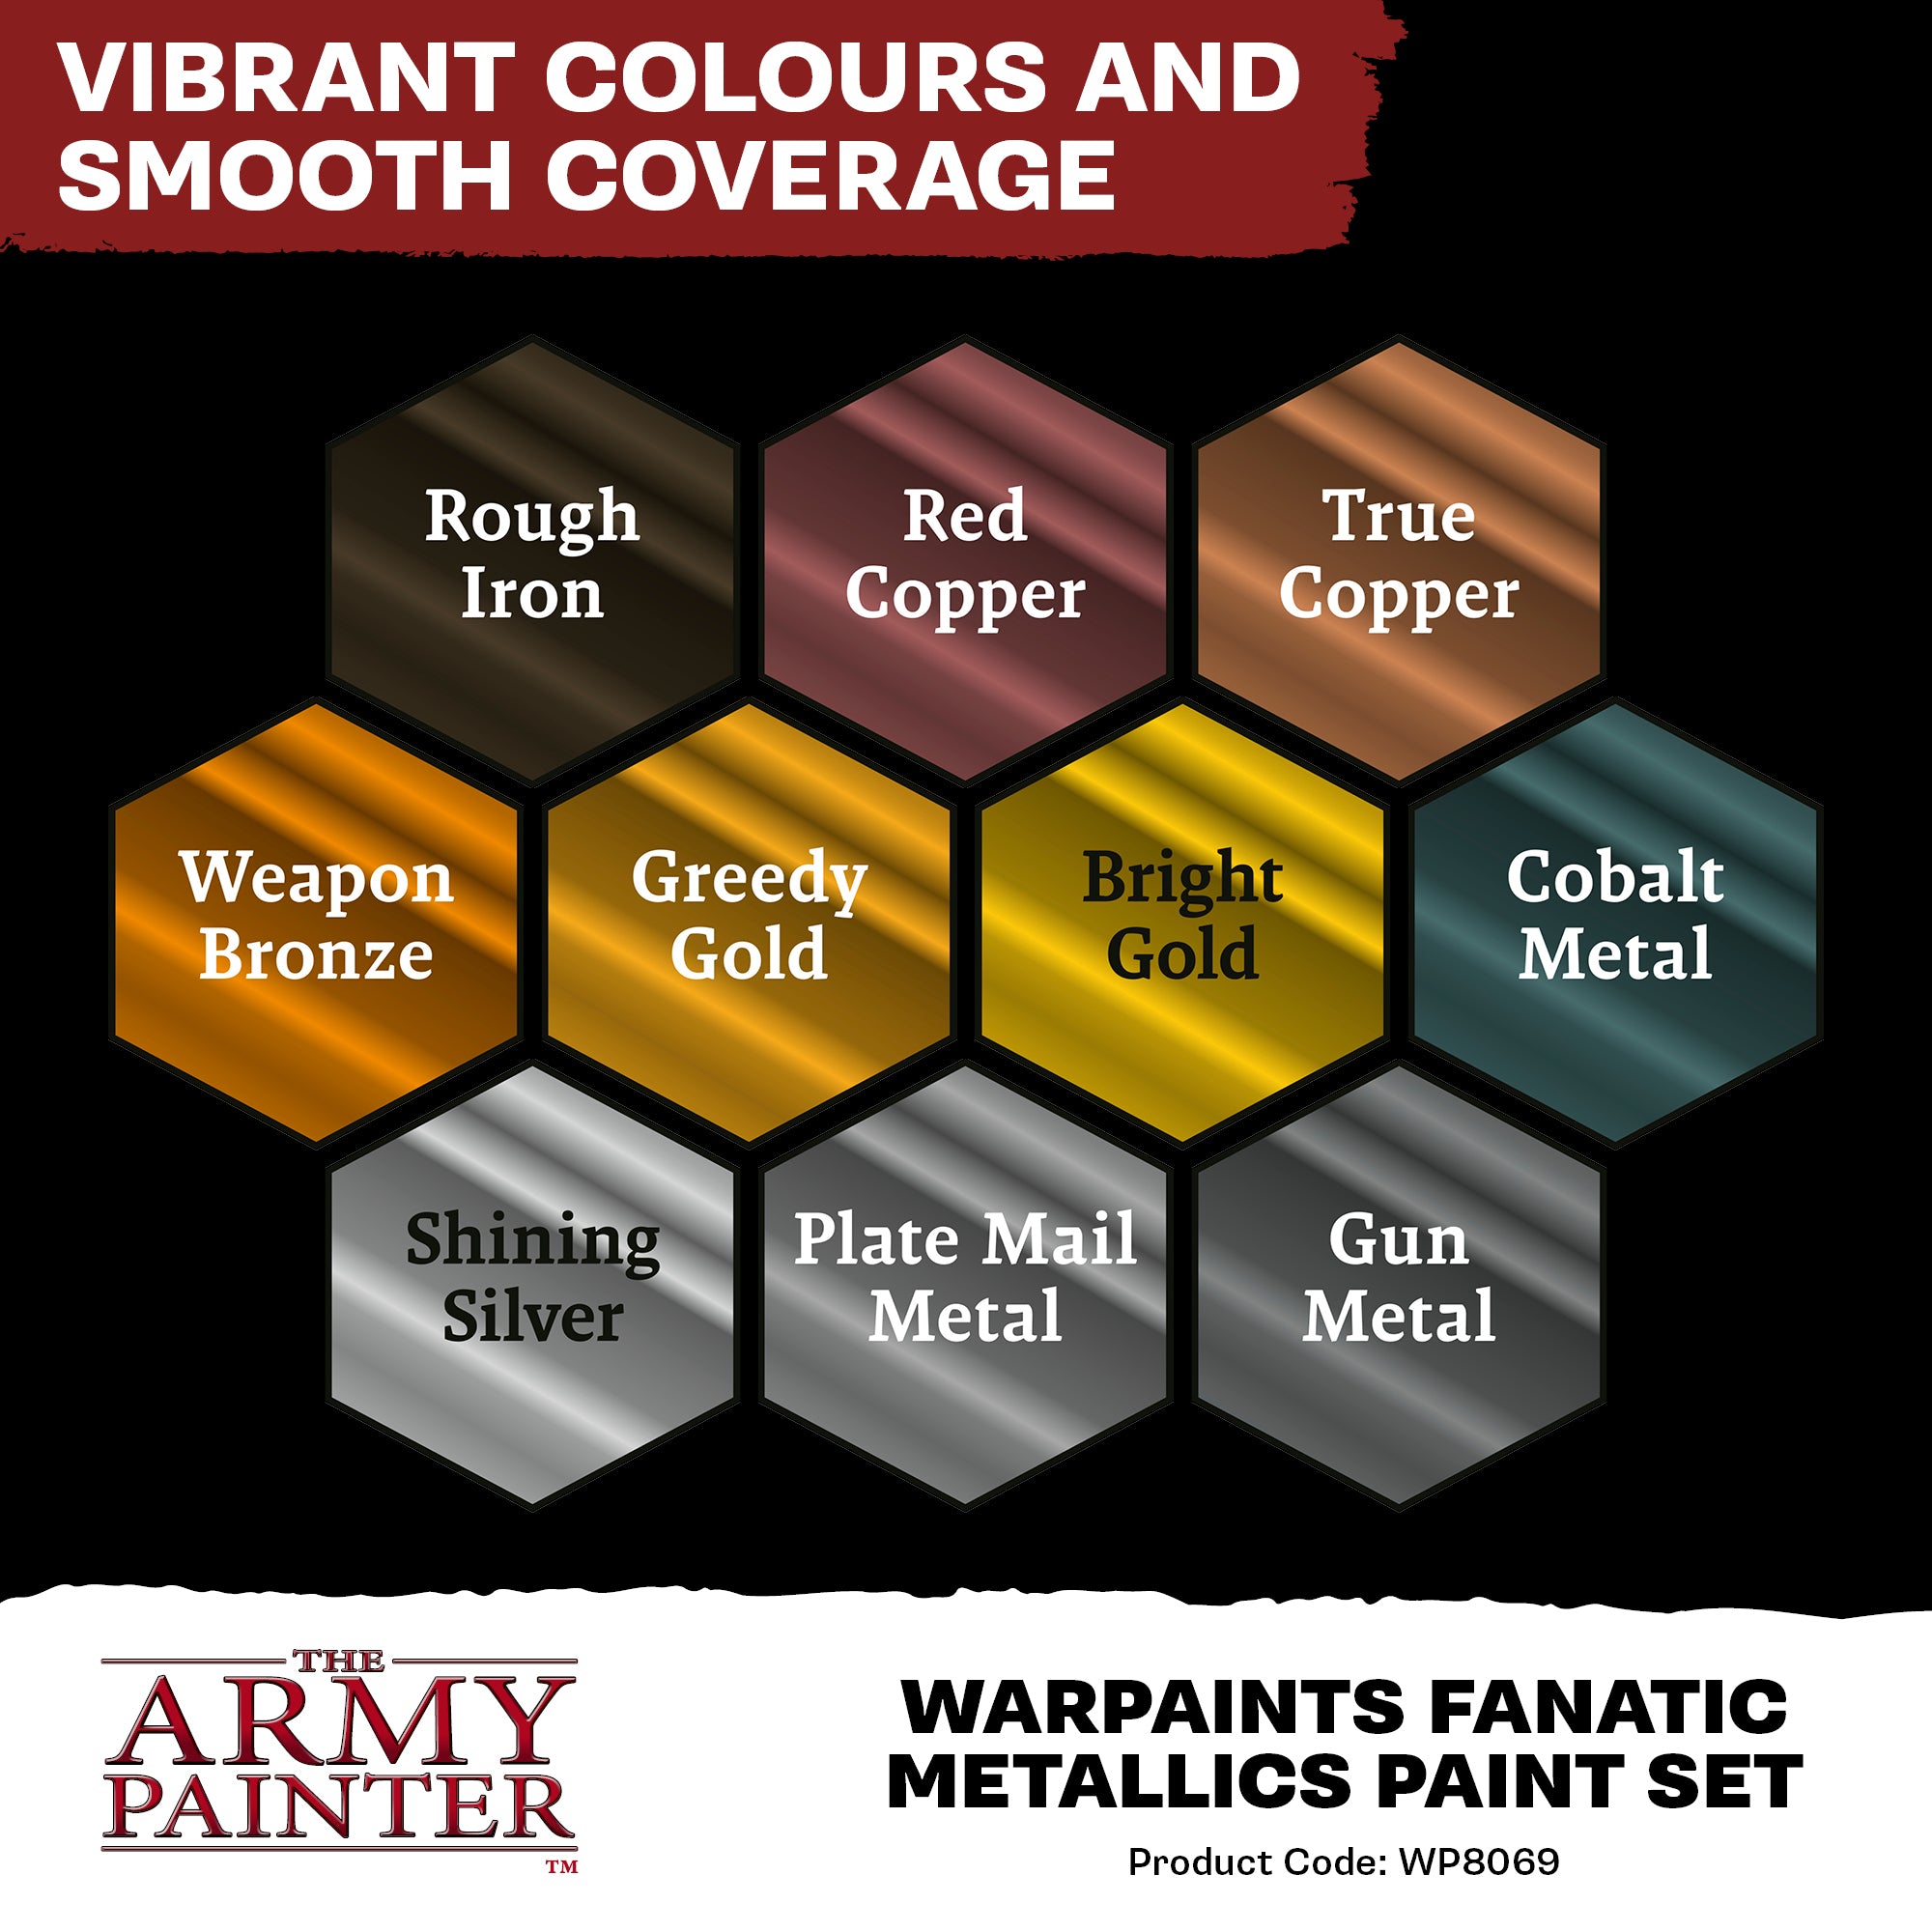 The Army Painter Warpaints Fanatic Complete Paint Set (PRE ORDER